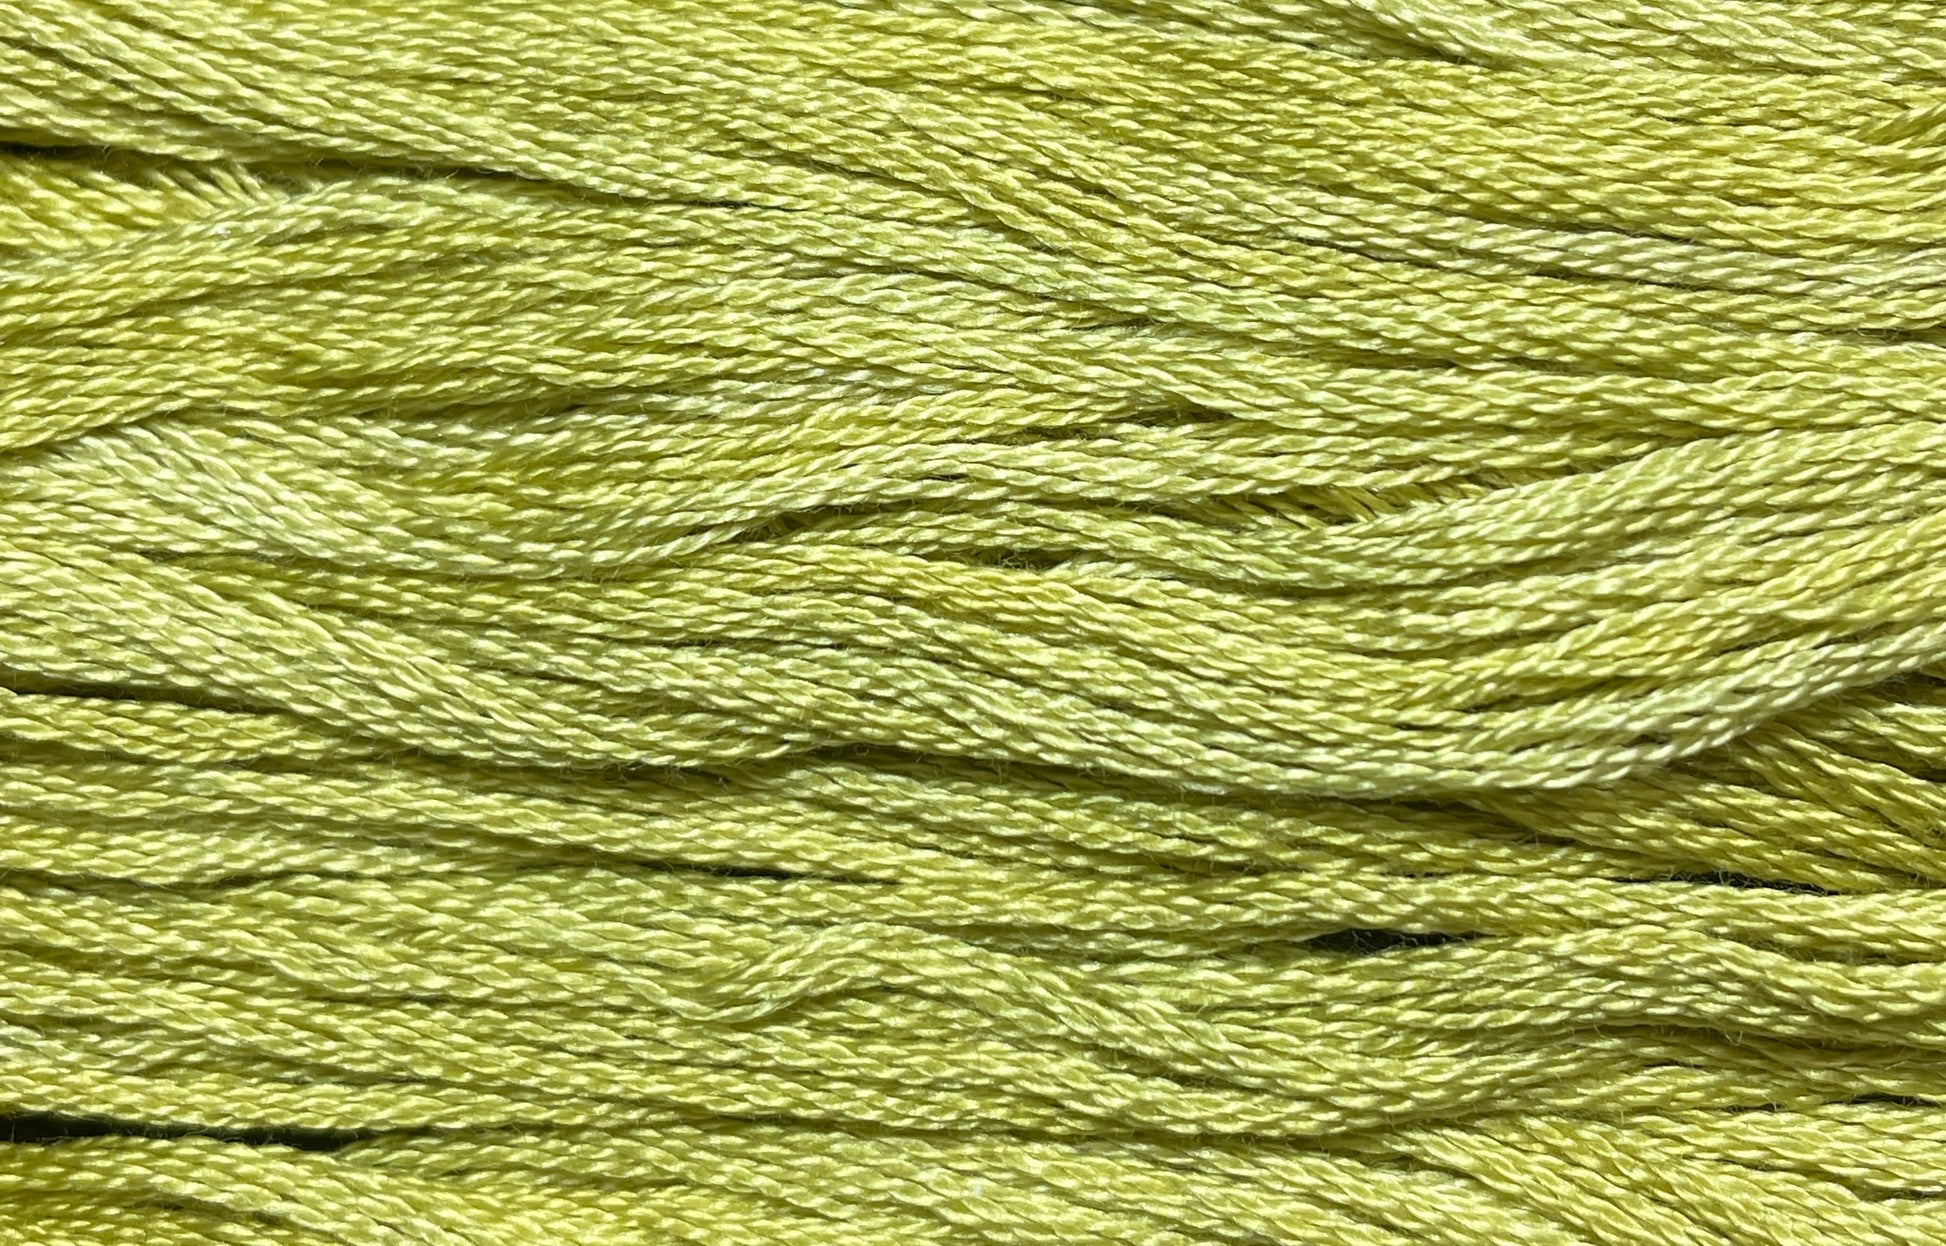 Cornhusk - Gentle Arts Cotton Thread - 5 yard Skein - Cross Stitch Floss, Thread & Floss, Thread & Floss, The Crafty Grimalkin - A Cross Stitch Store